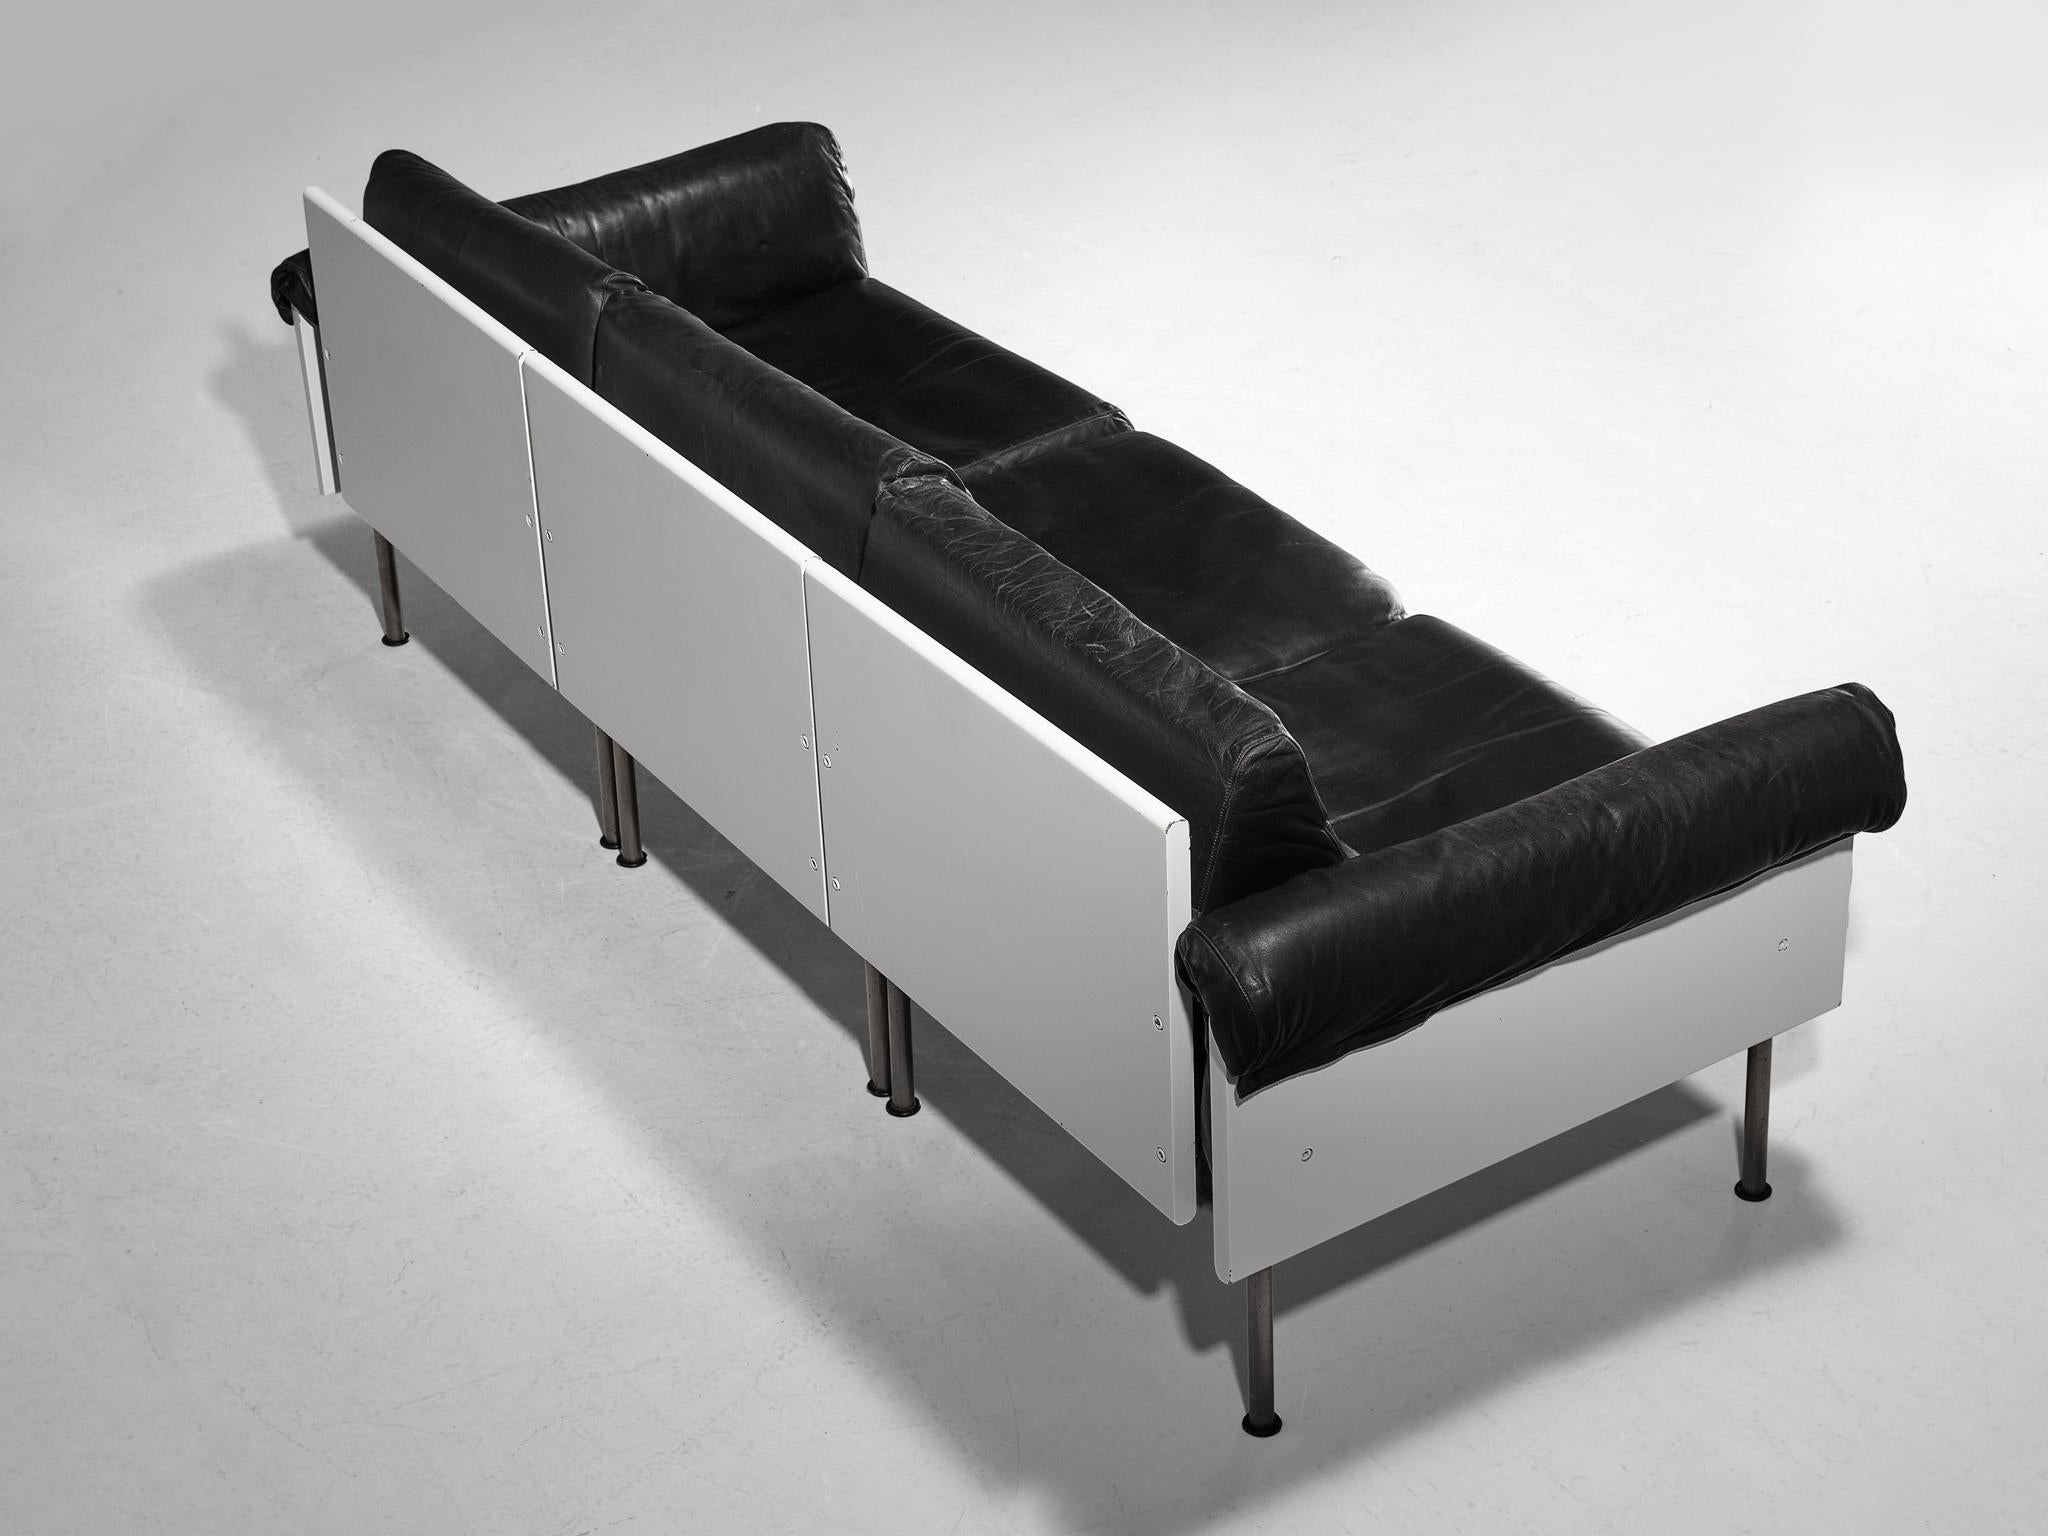 Yrjö Kukkapuro pour Haimi Finland, canapé modulaire, cuir, métal, bois, Finlande, 1963

Ce canapé sectionnel épuré se caractérise par une esthétique simpliste, naturelle et moderniste. Le design se caractérise par une construction solide faite de